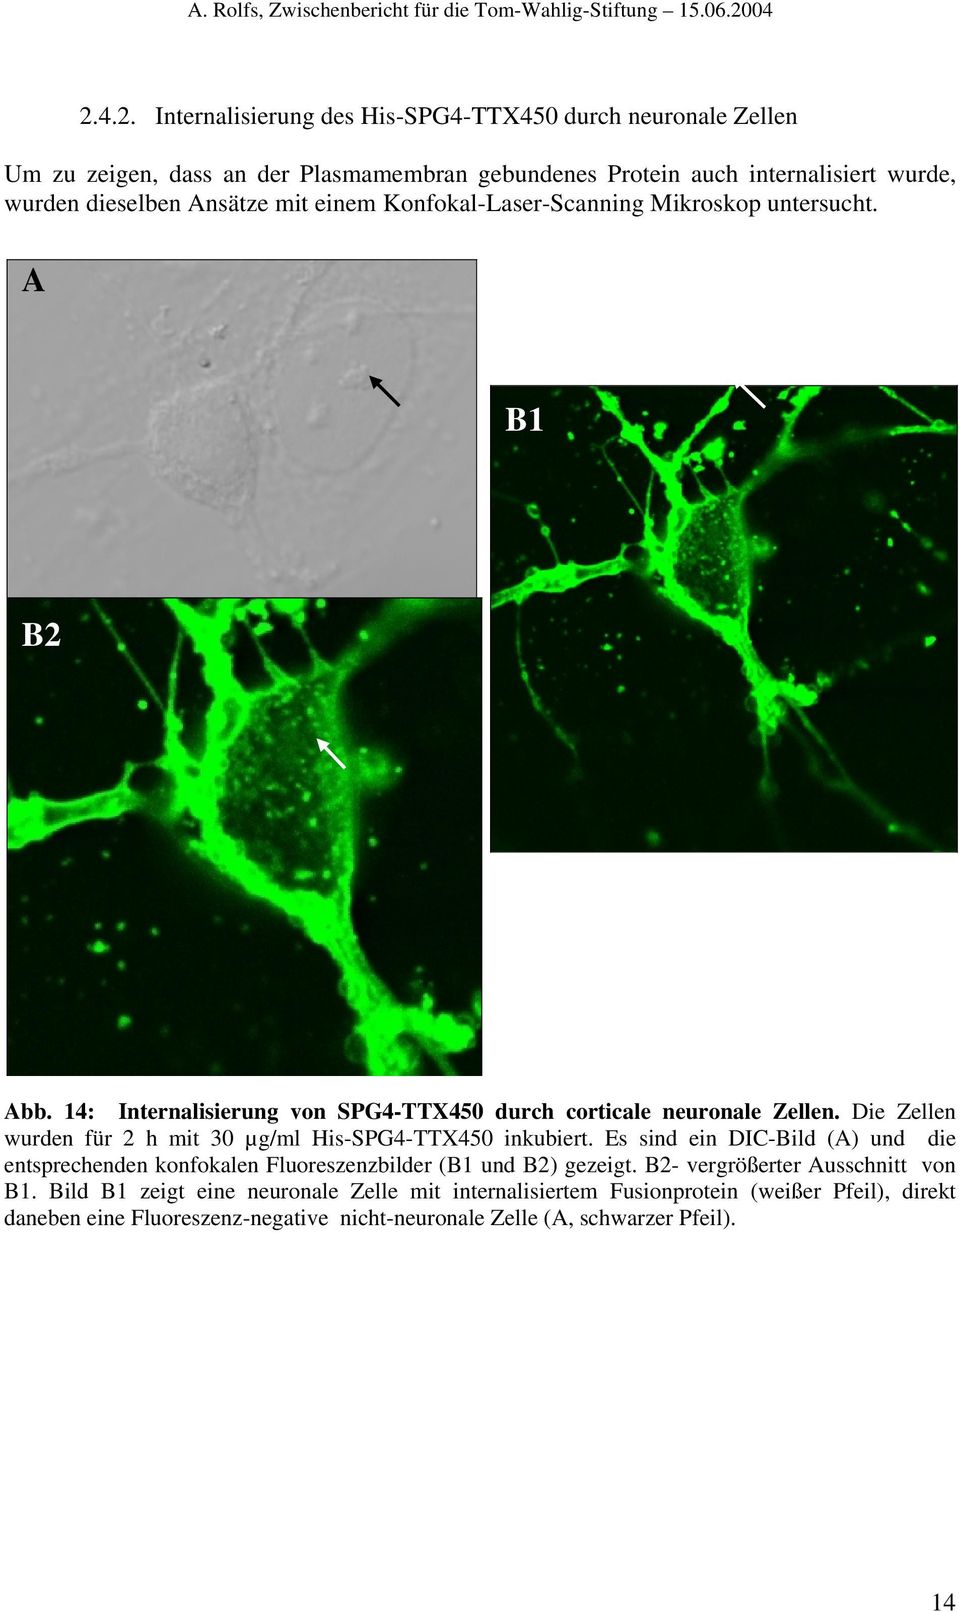 Die Zellen wurden für 2 h mit 30 µg/ml His-SPG4-TTX450 inkubiert. Es sind ein DIC-Bild (A) und die entsprechenden konfokalen Fluoreszenzbilder (B1 und B2) gezeigt.